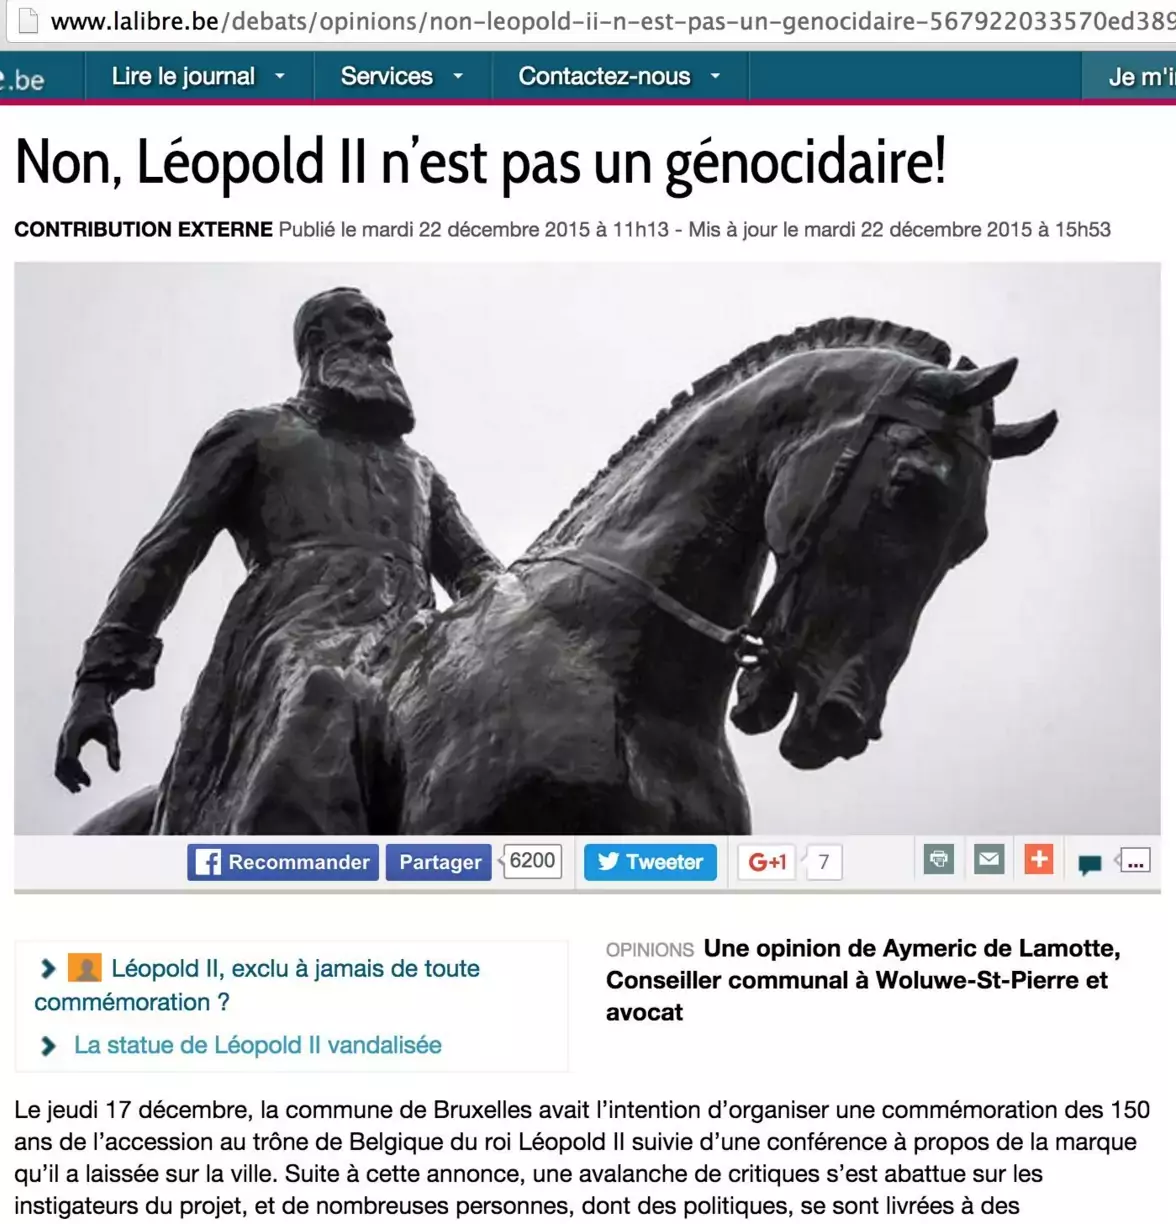 Carte Blanche publiée dans La Libre Belgique par Aymeric De Lamotte glorifiant le colonialisme et les atrocités des "mains coupées" du régime de Léopold II.